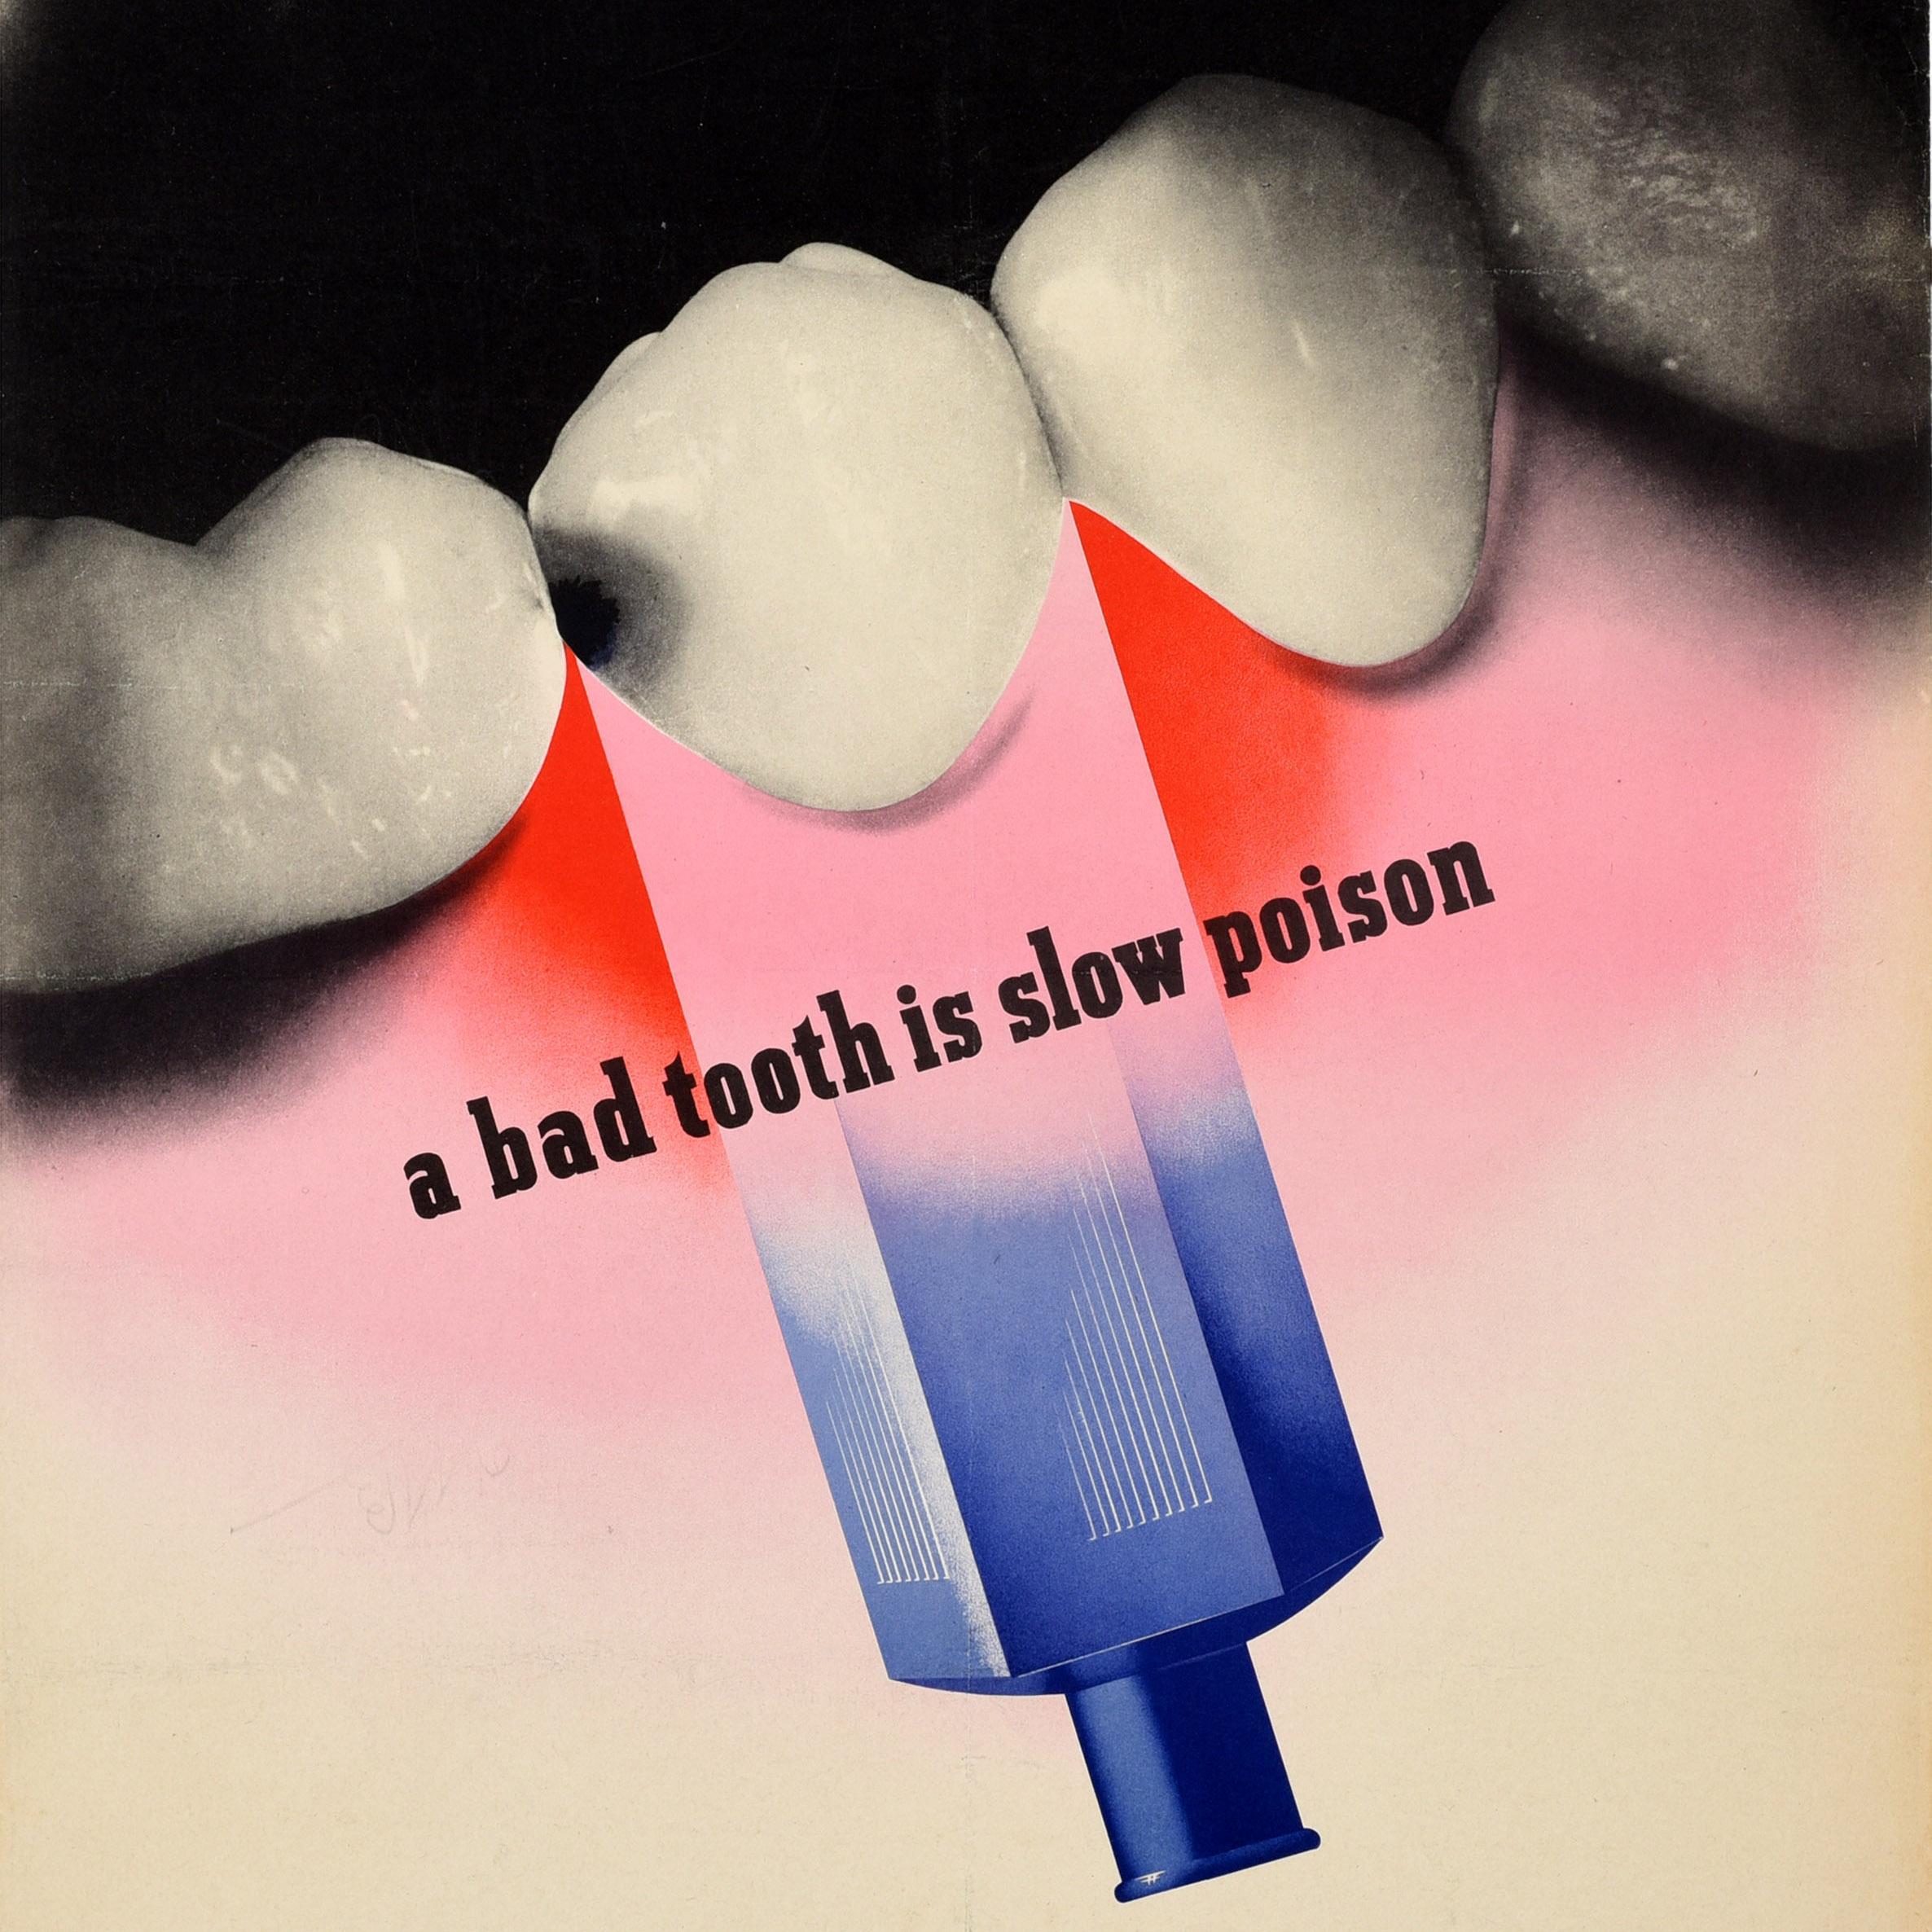 Affiche de santé militaire originale datant de la Seconde Guerre mondiale - A bad tooth is slow poison Visit your Dental Officer regularly (Une mauvaise dent est un poison lent - Visitez régulièrement votre dentiste) - avec un superbe dessin du